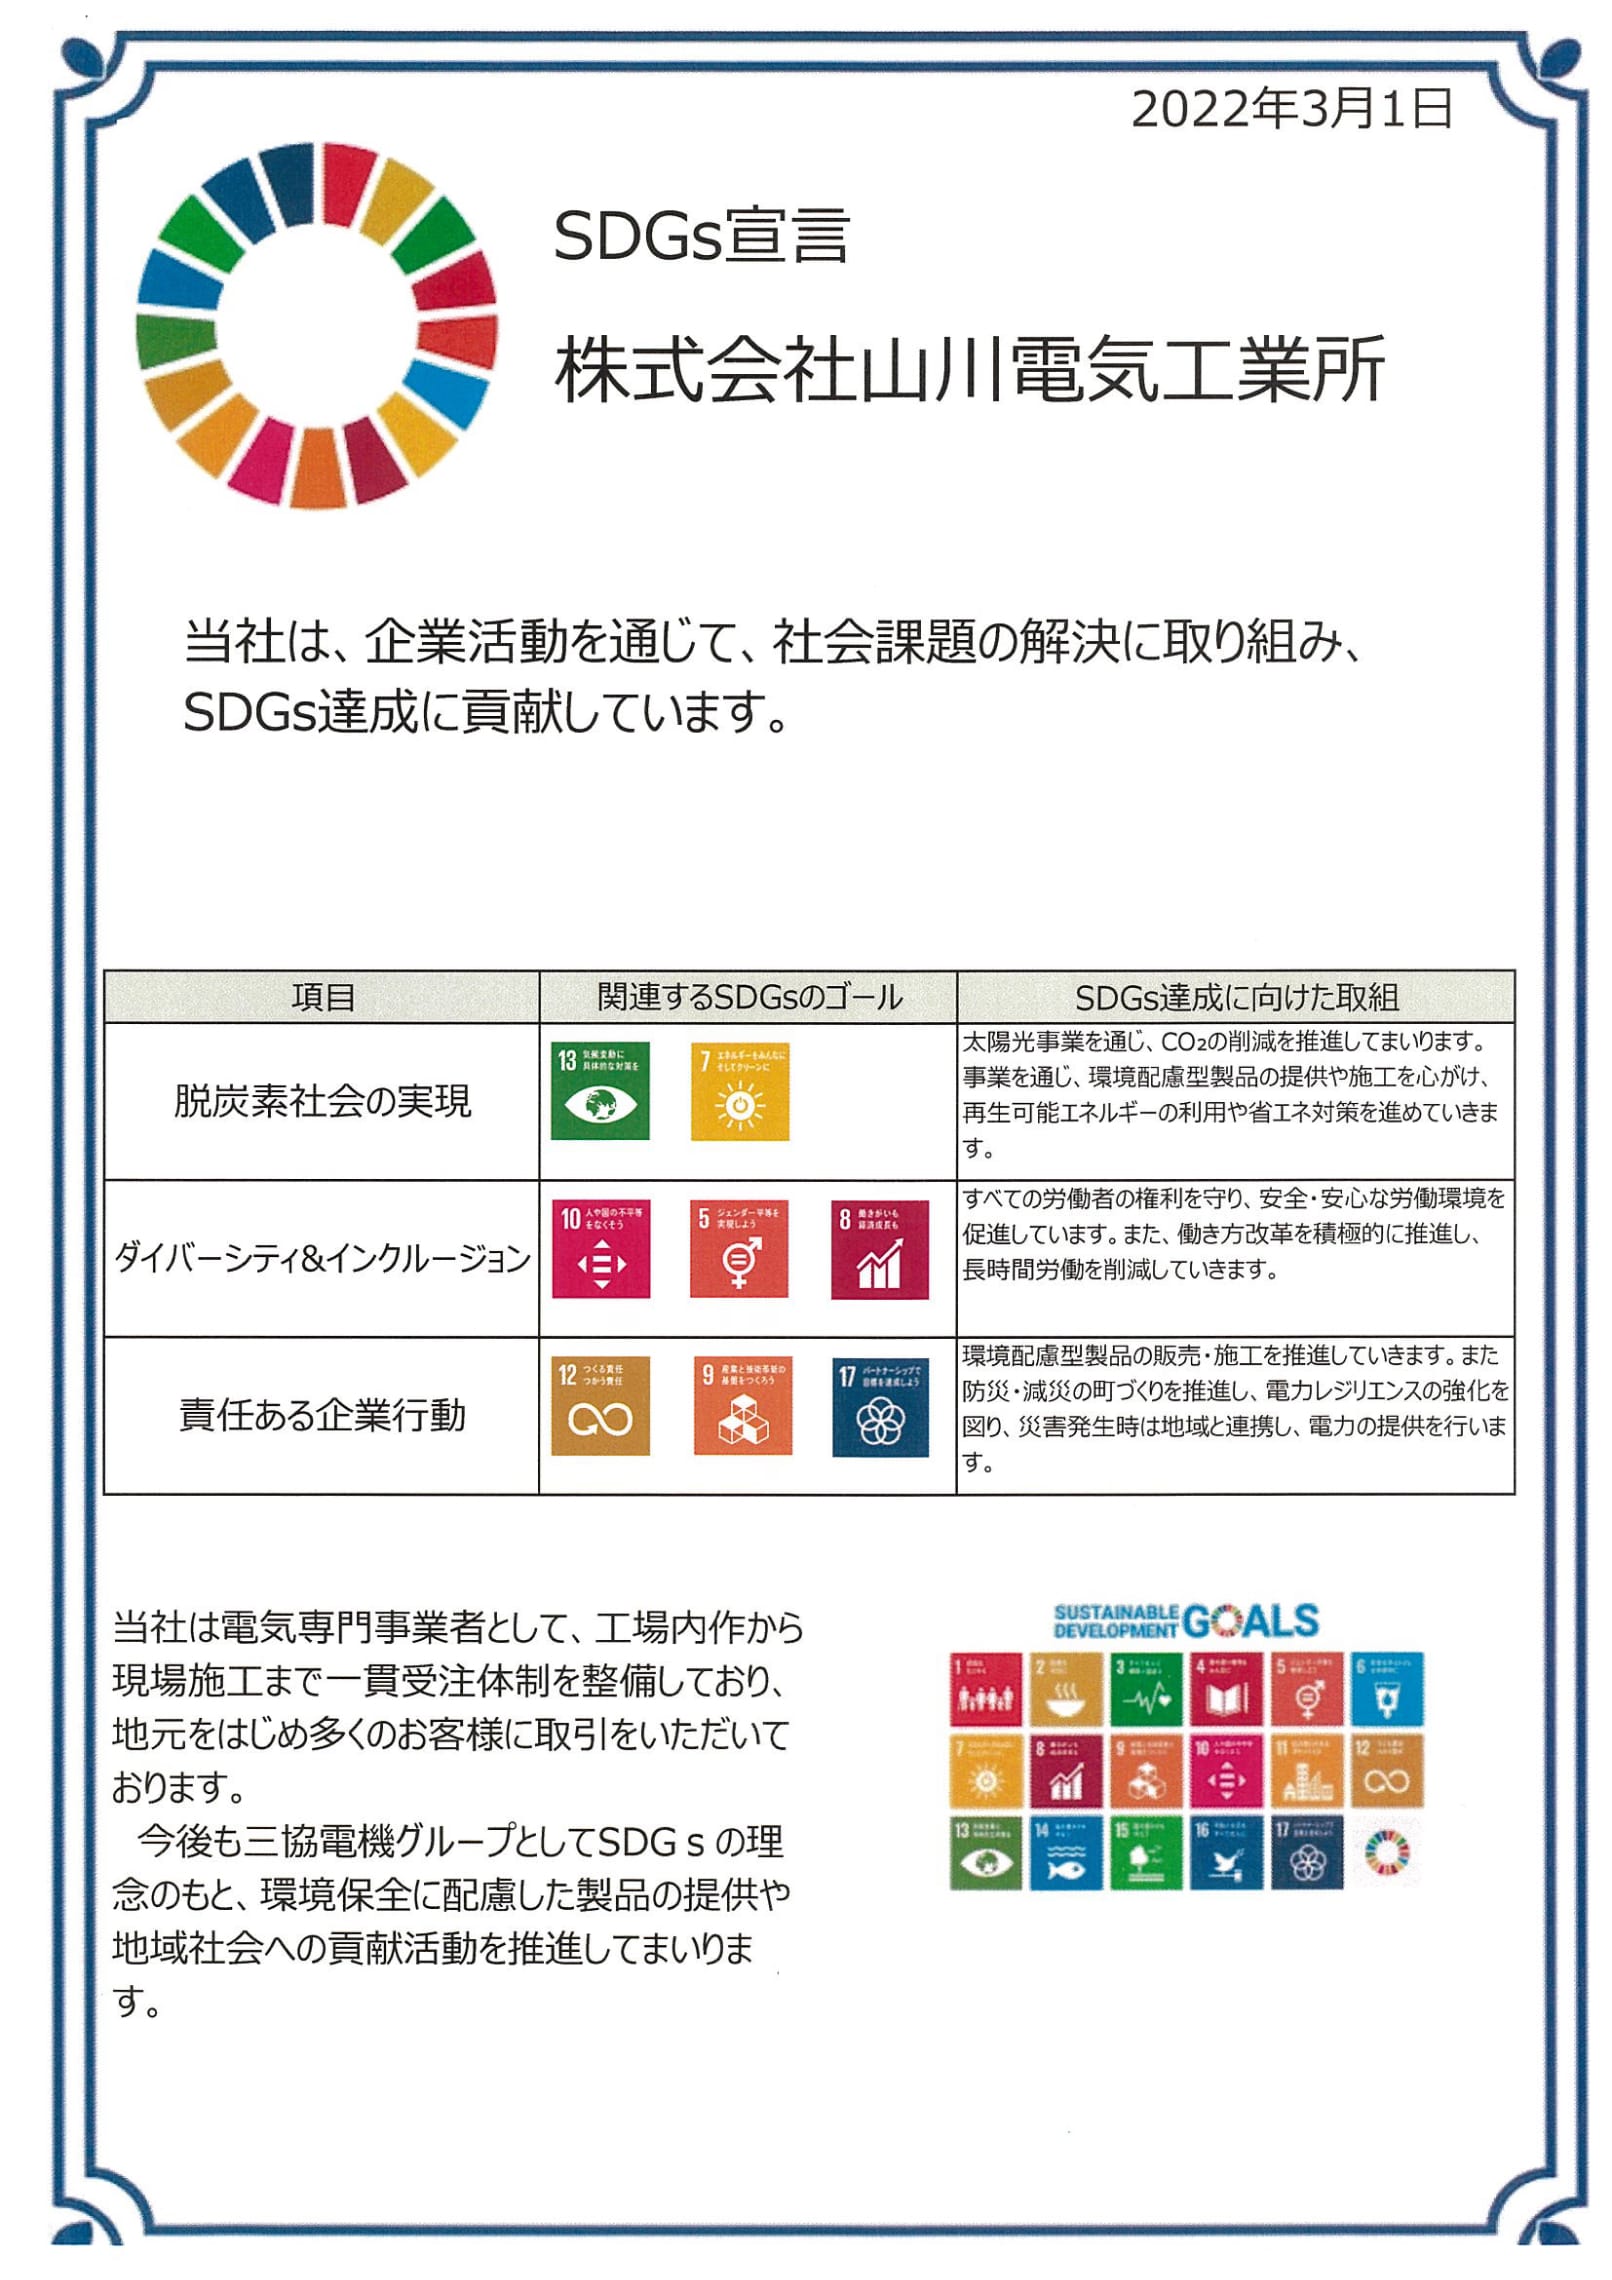 SDGs宣言 株式会社山川電気工業所